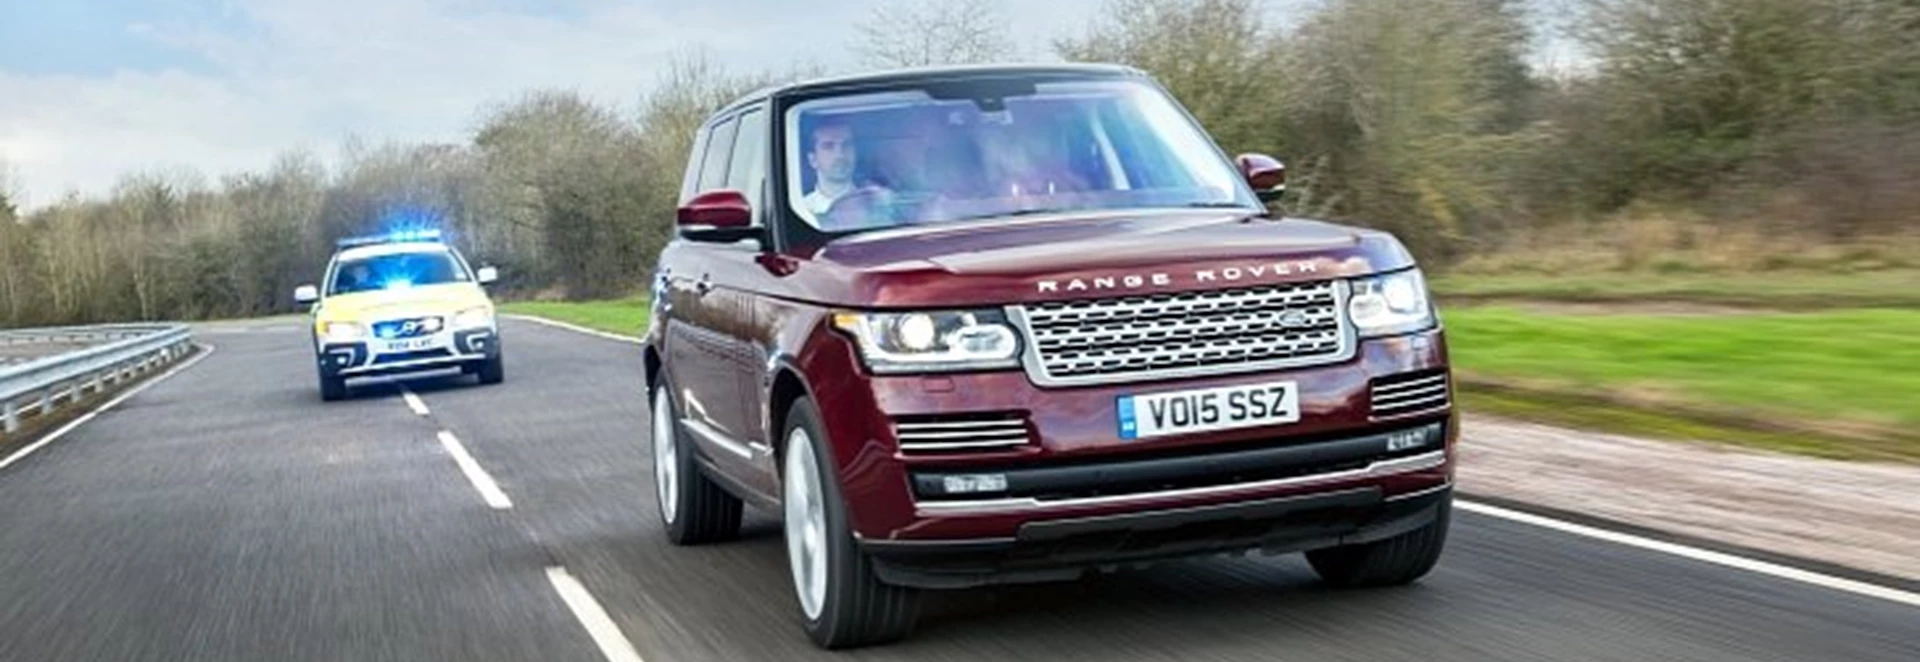 Jaguar Land Rover invests in 100 autonomous research cars